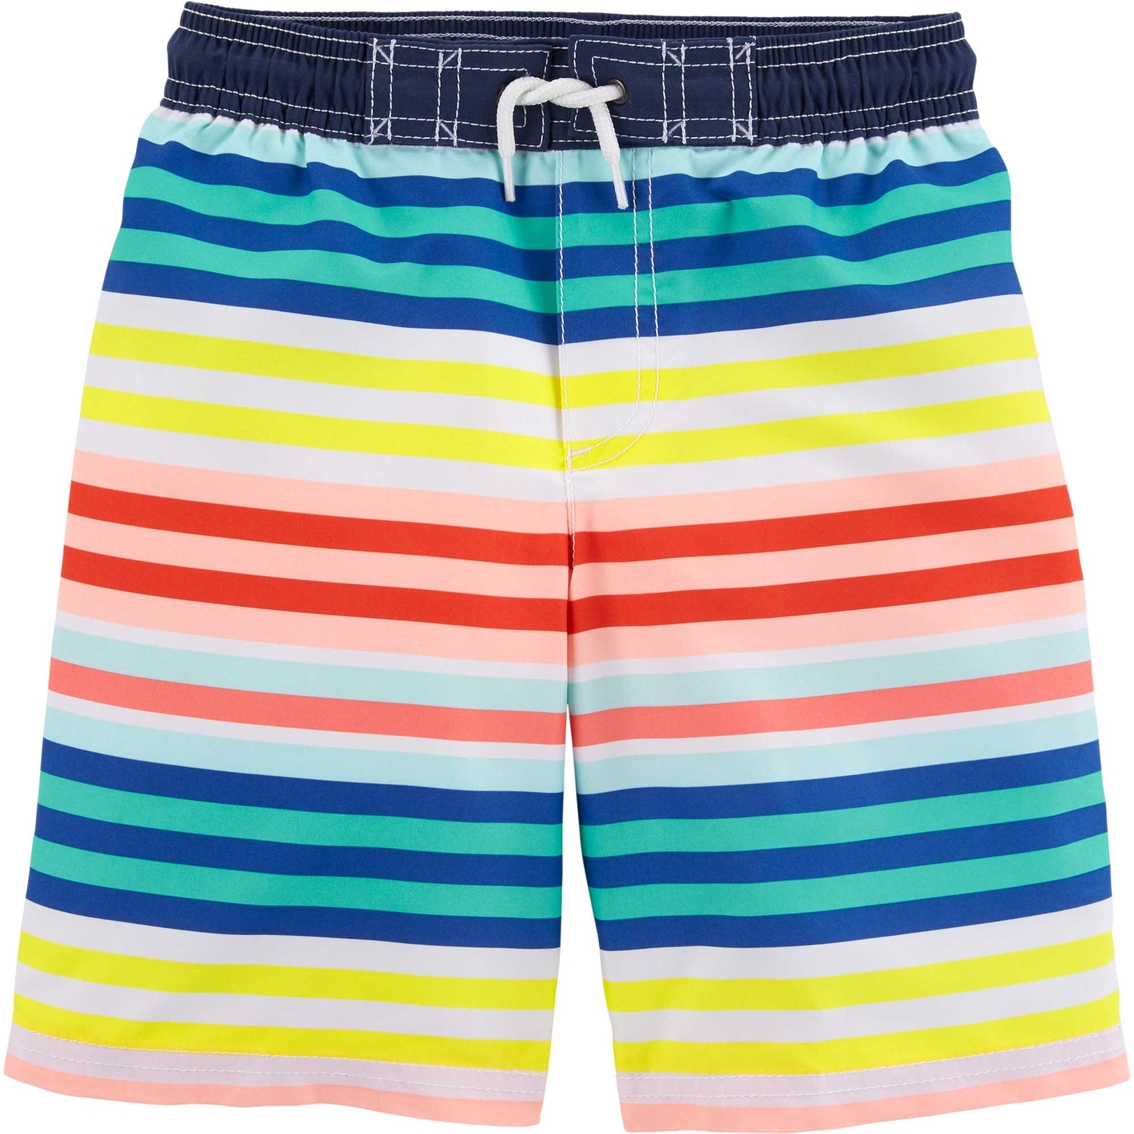 Carter's Little Boys Rainbow Swim Trunks | Boys 4-7x | Clothing ...